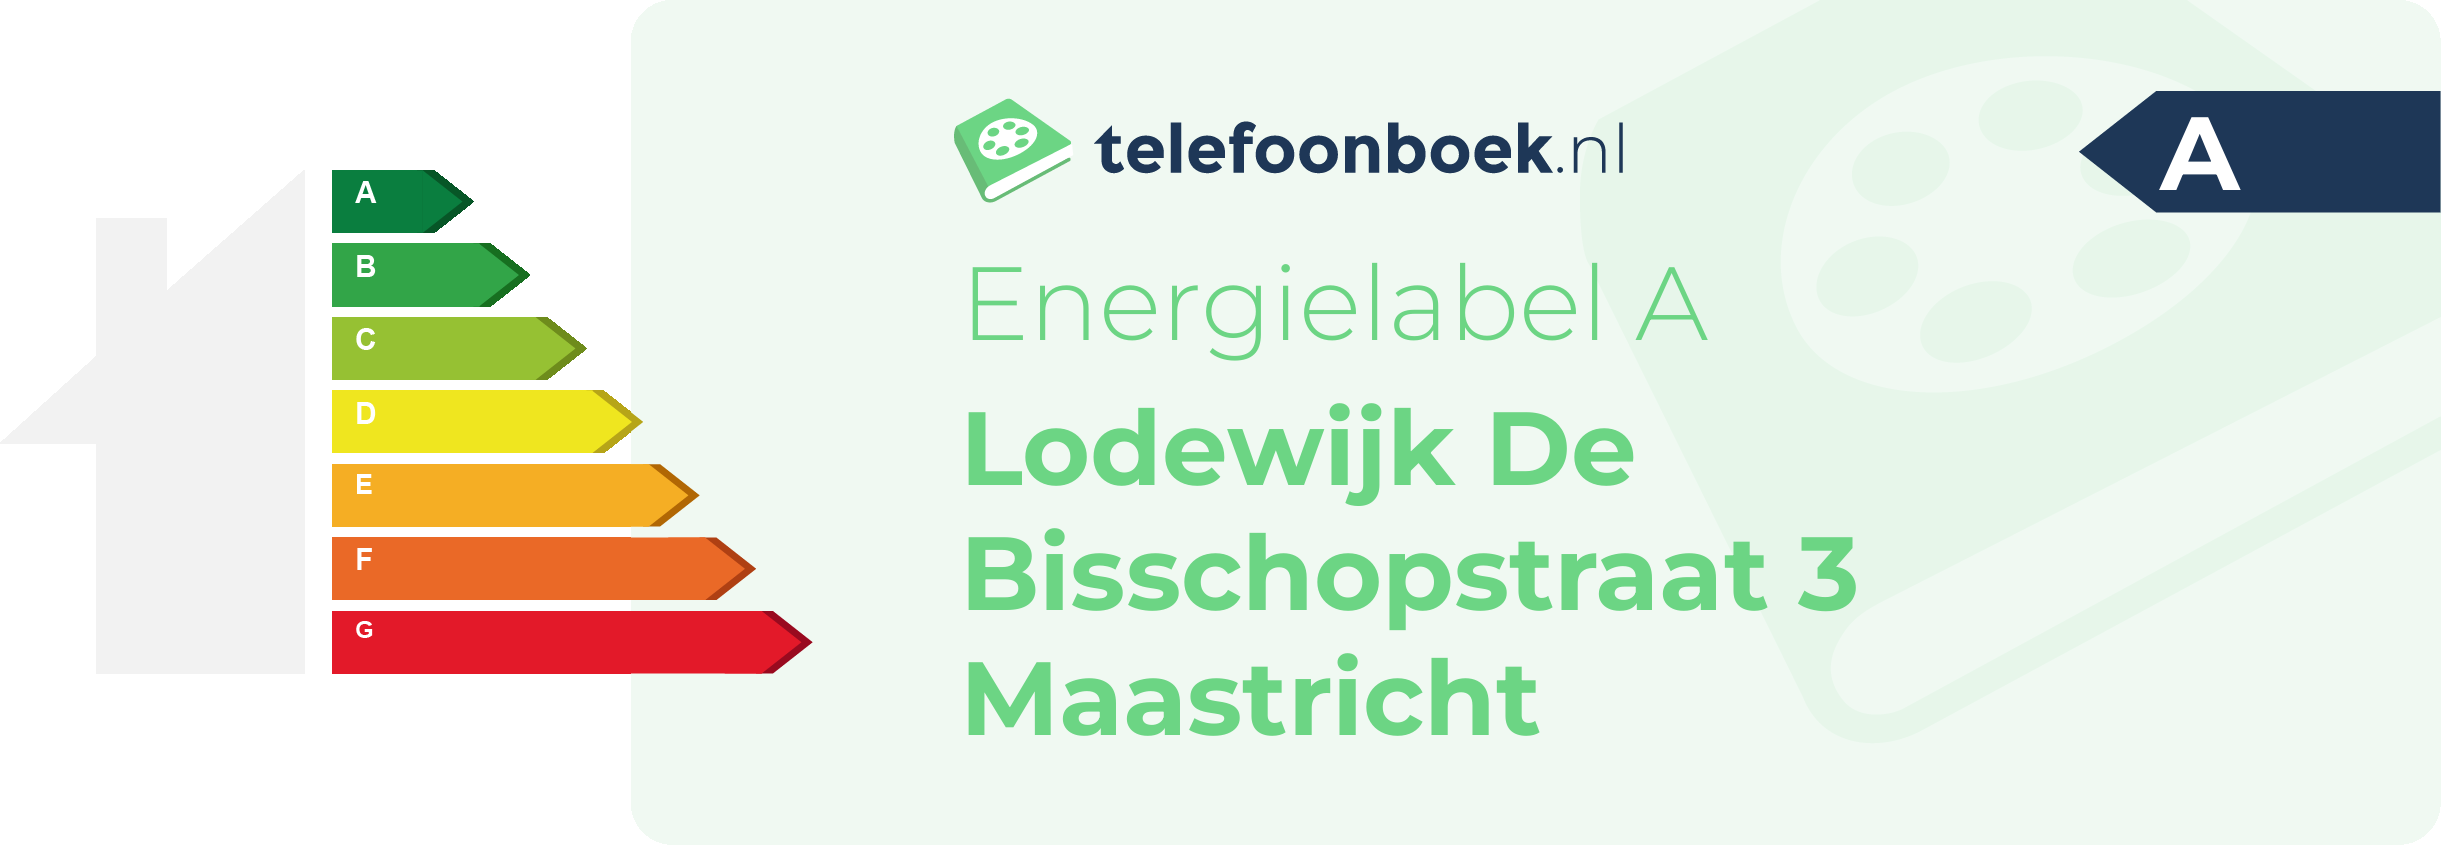 Energielabel Lodewijk De Bisschopstraat 3 Maastricht